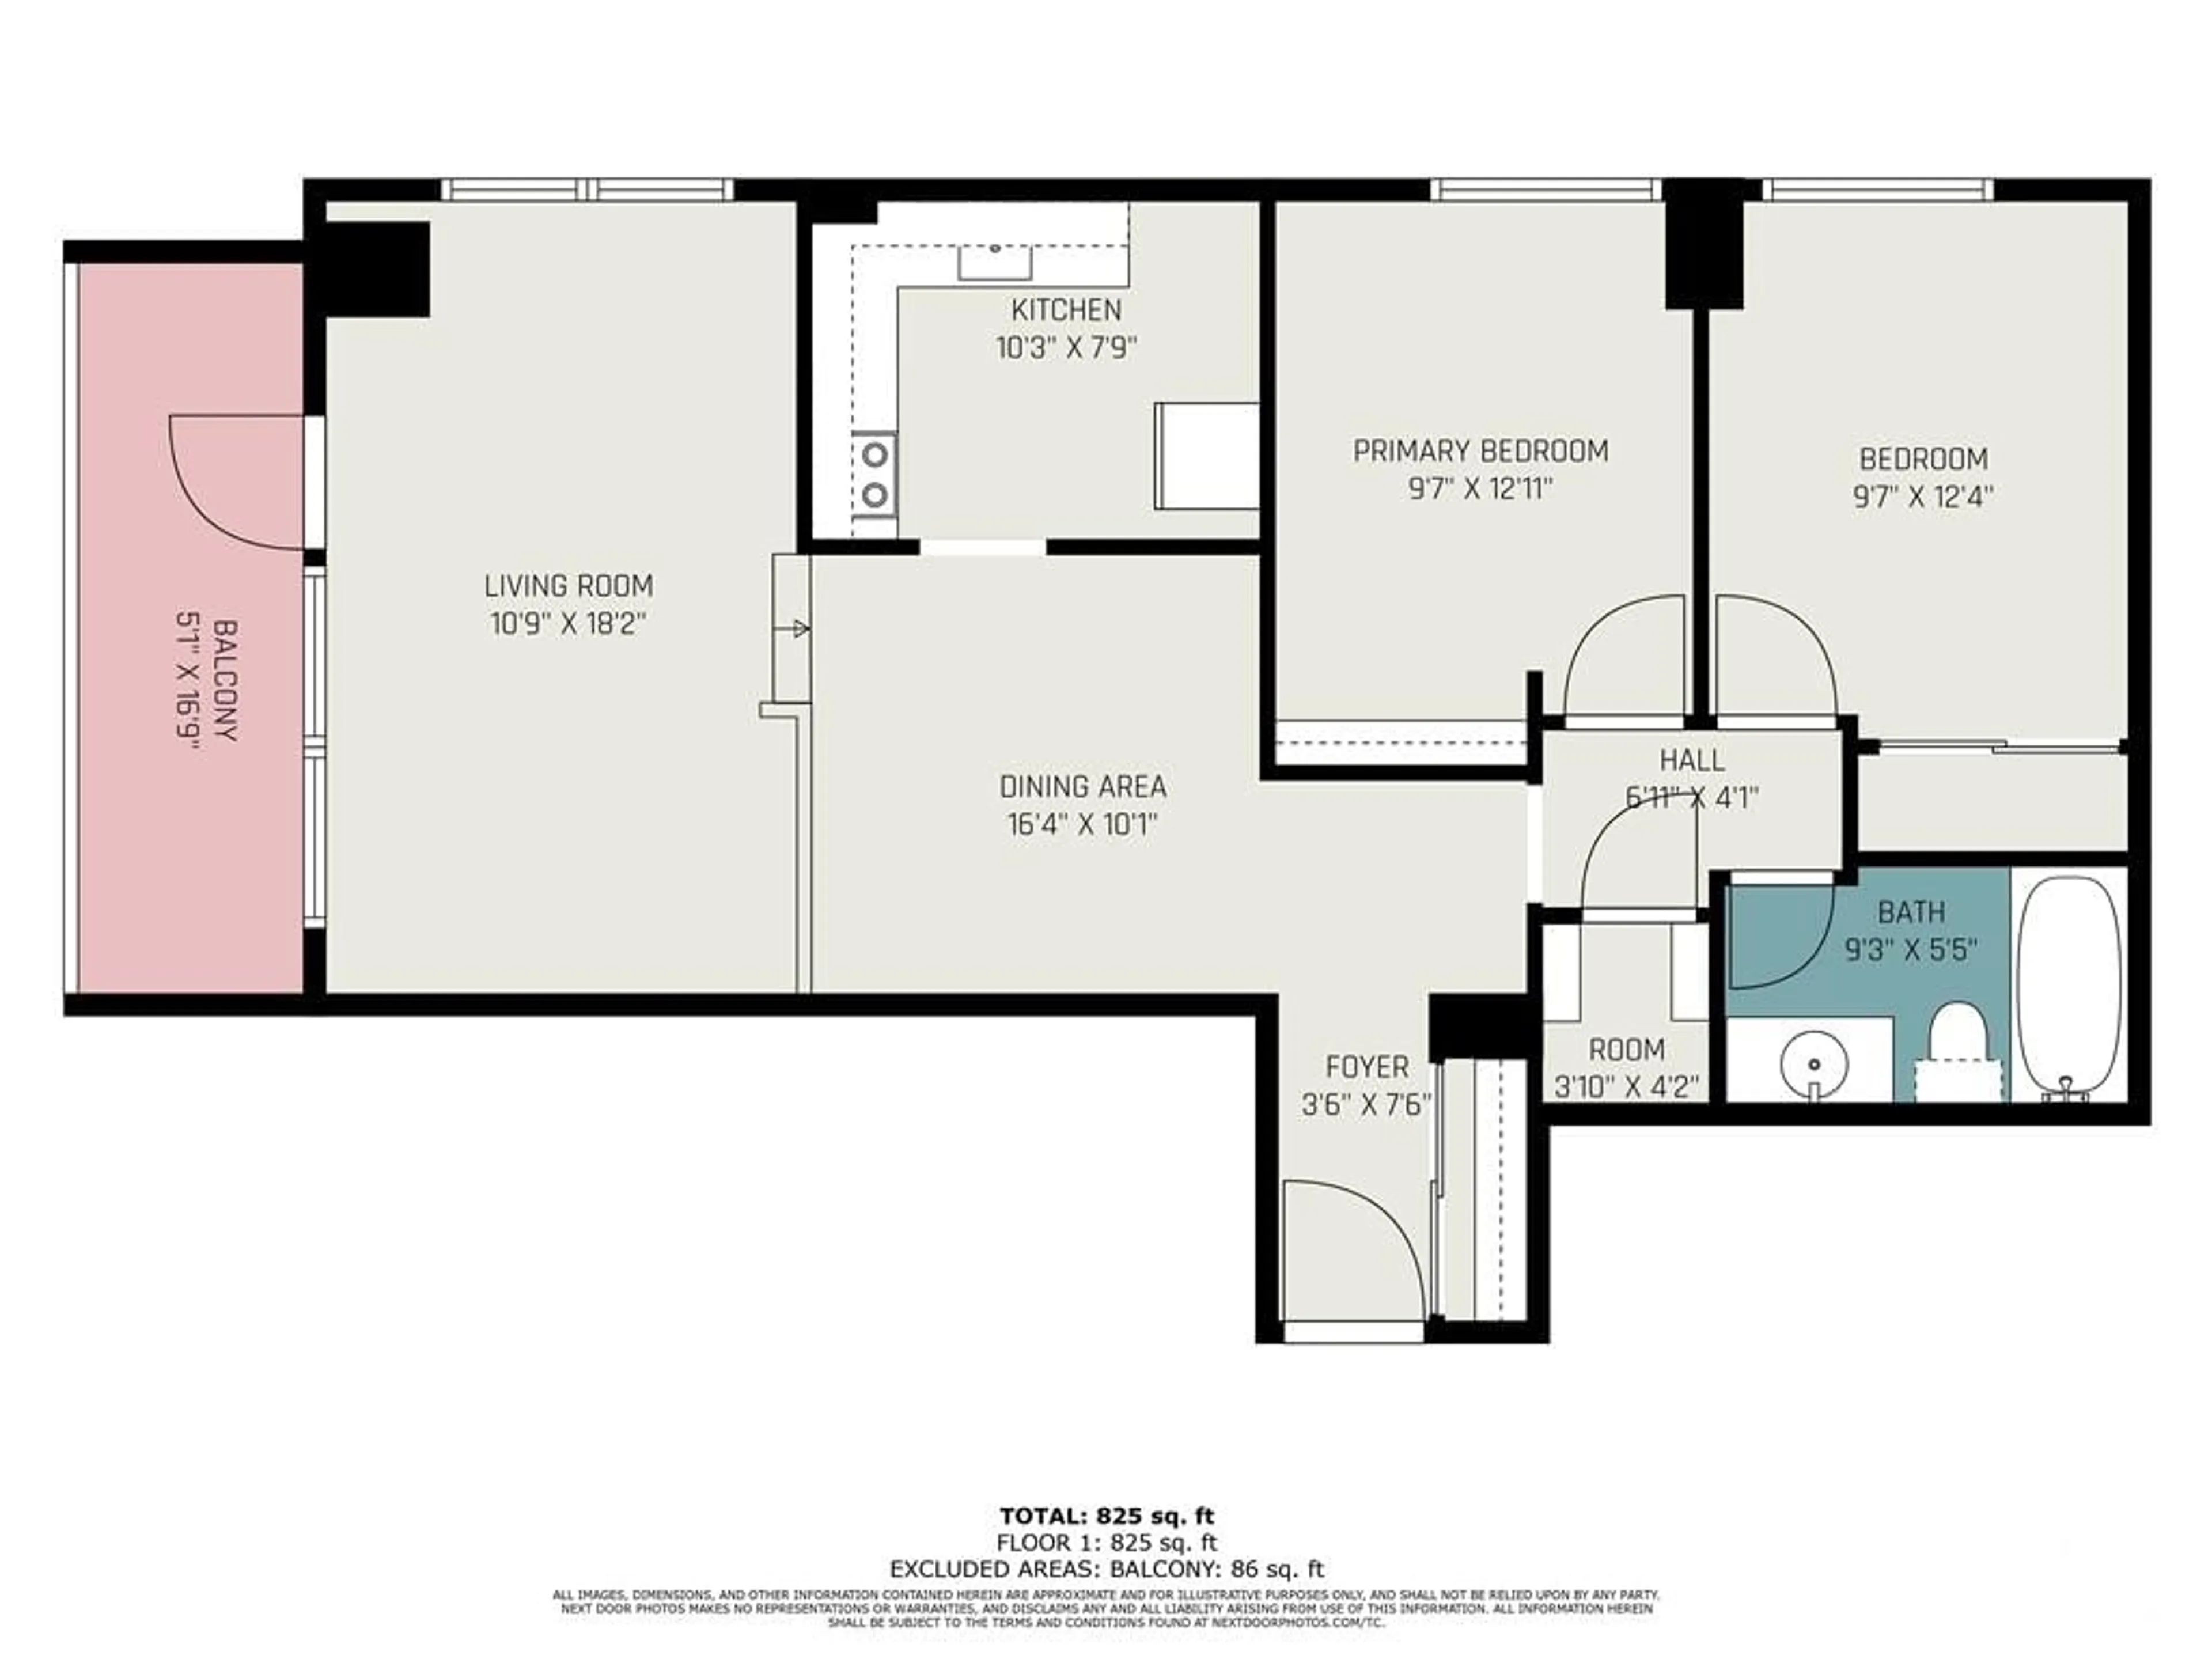 Floor plan for 1100 AMBLESIDE Dr #912, Ottawa Ontario K2B 8G6